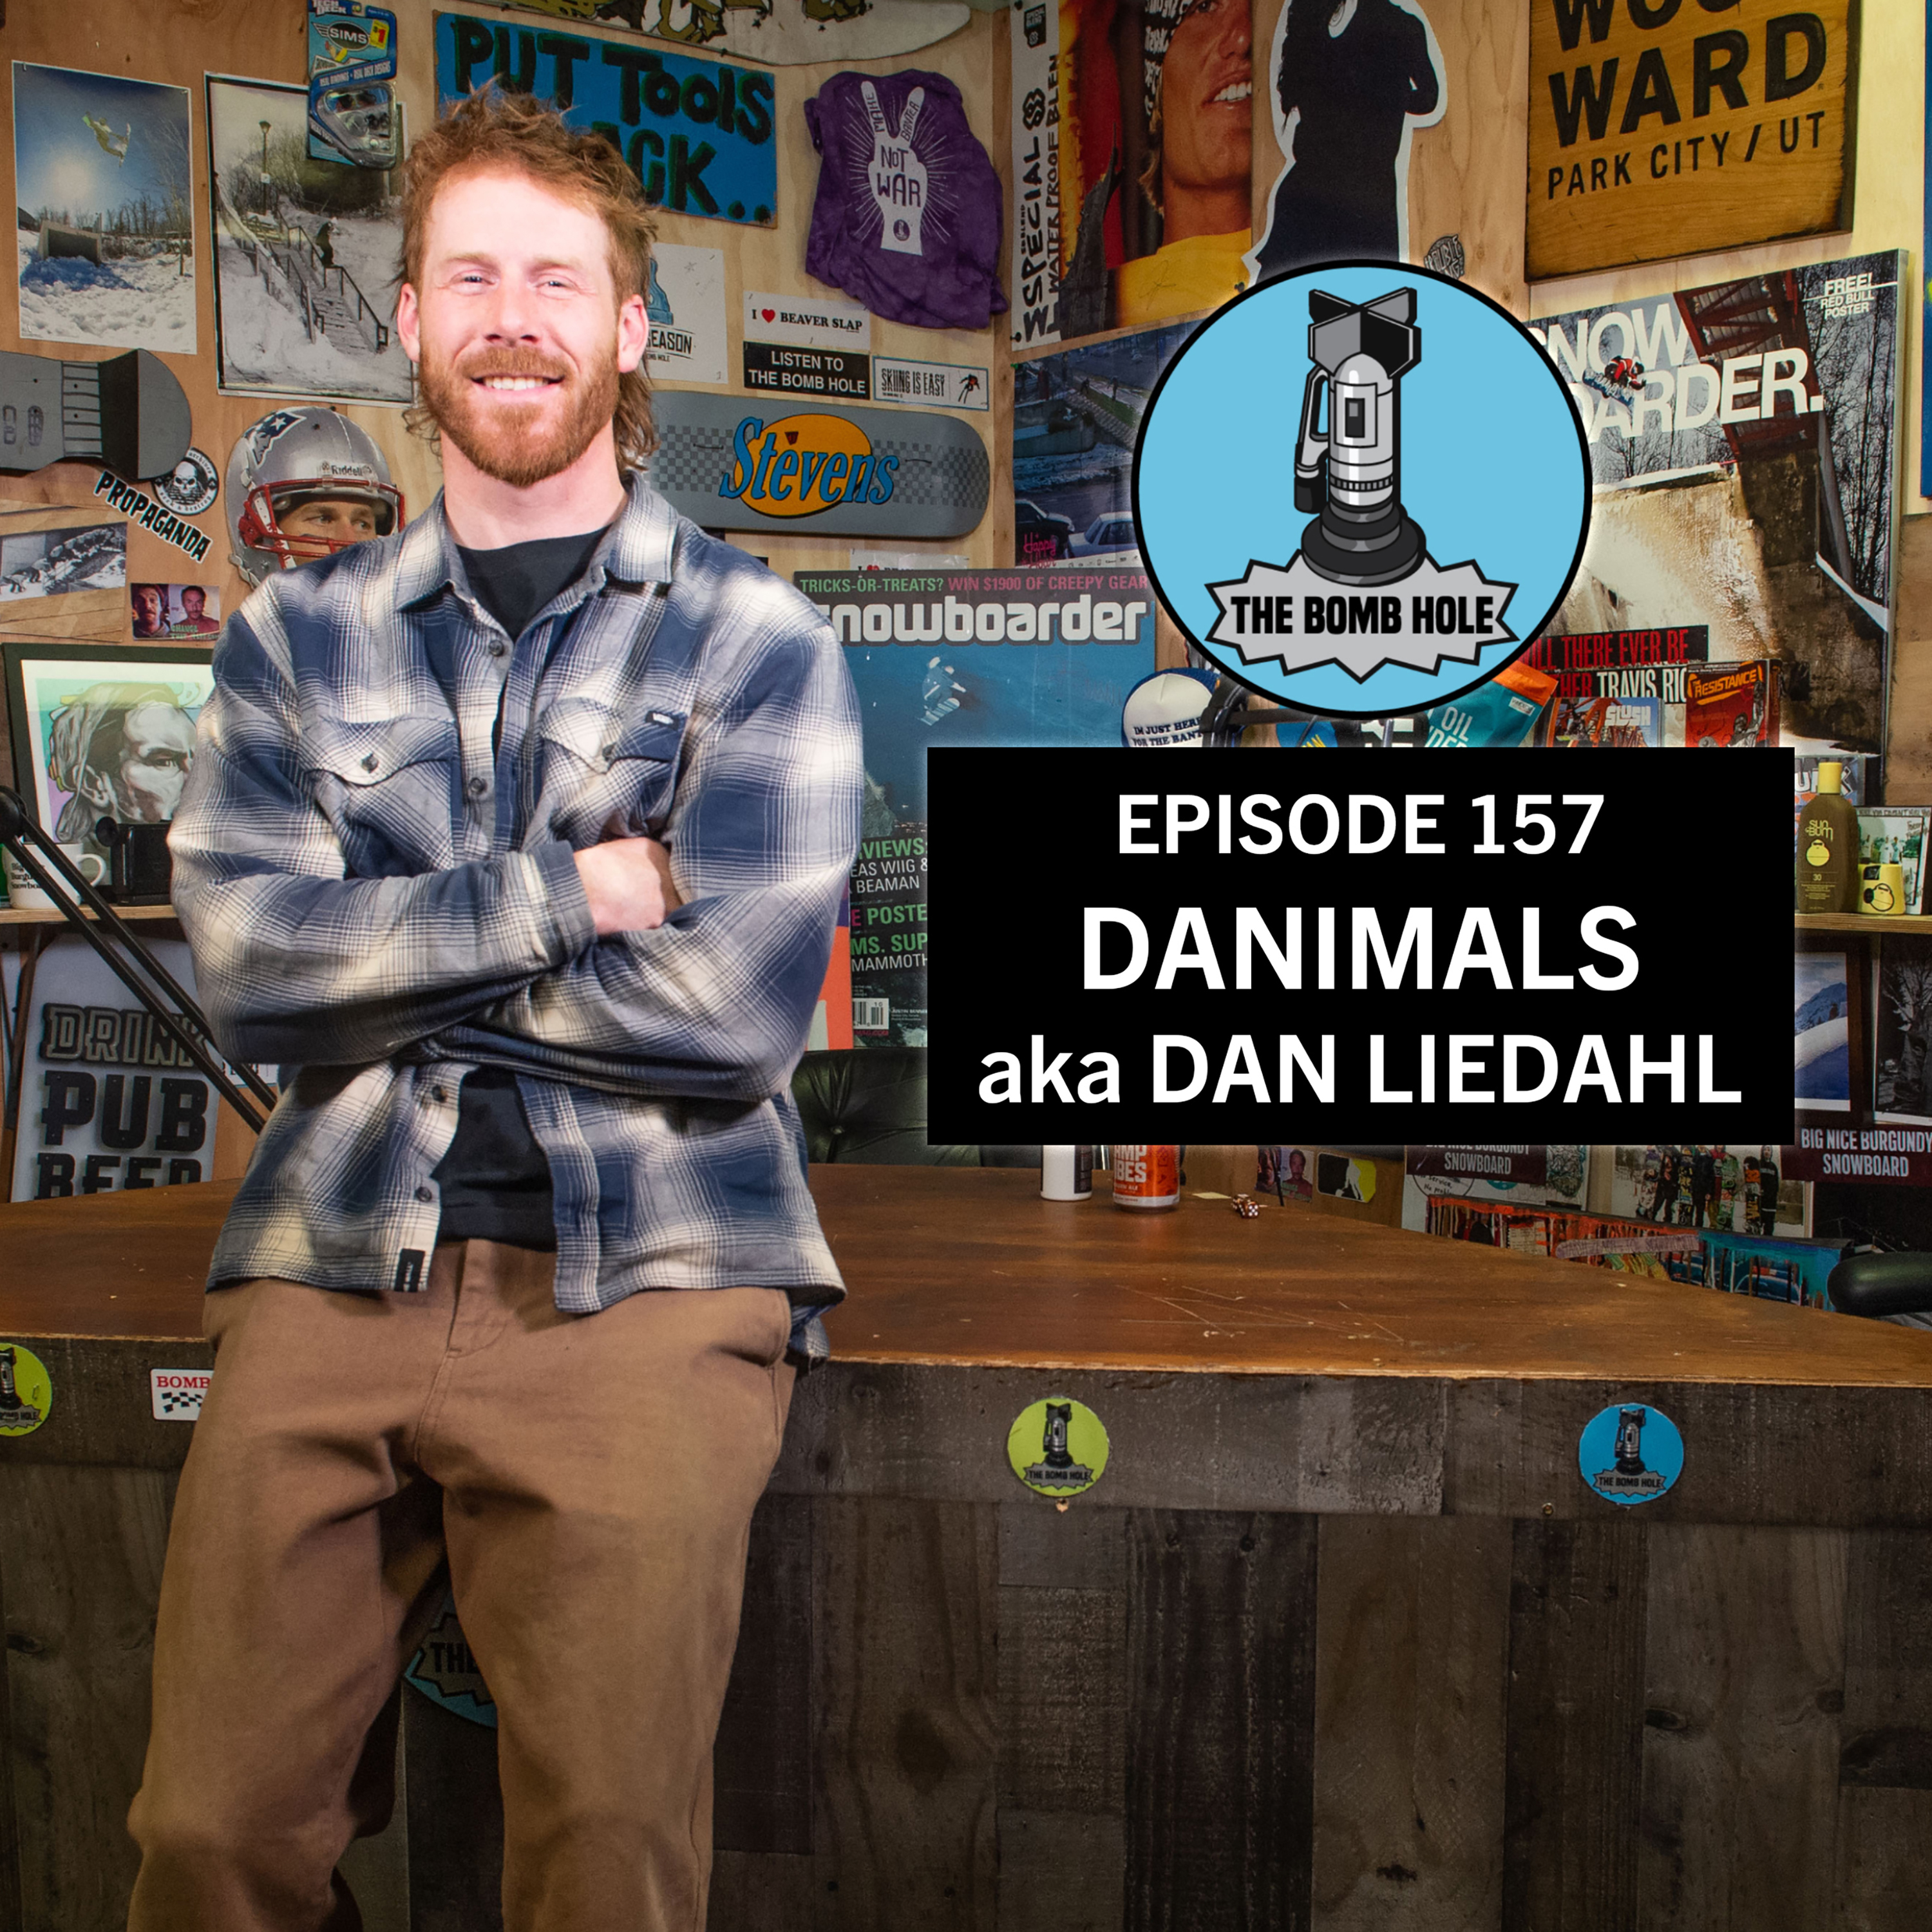 Dan ”Danimals” Liedahl | The Bomb Hole Episode 157